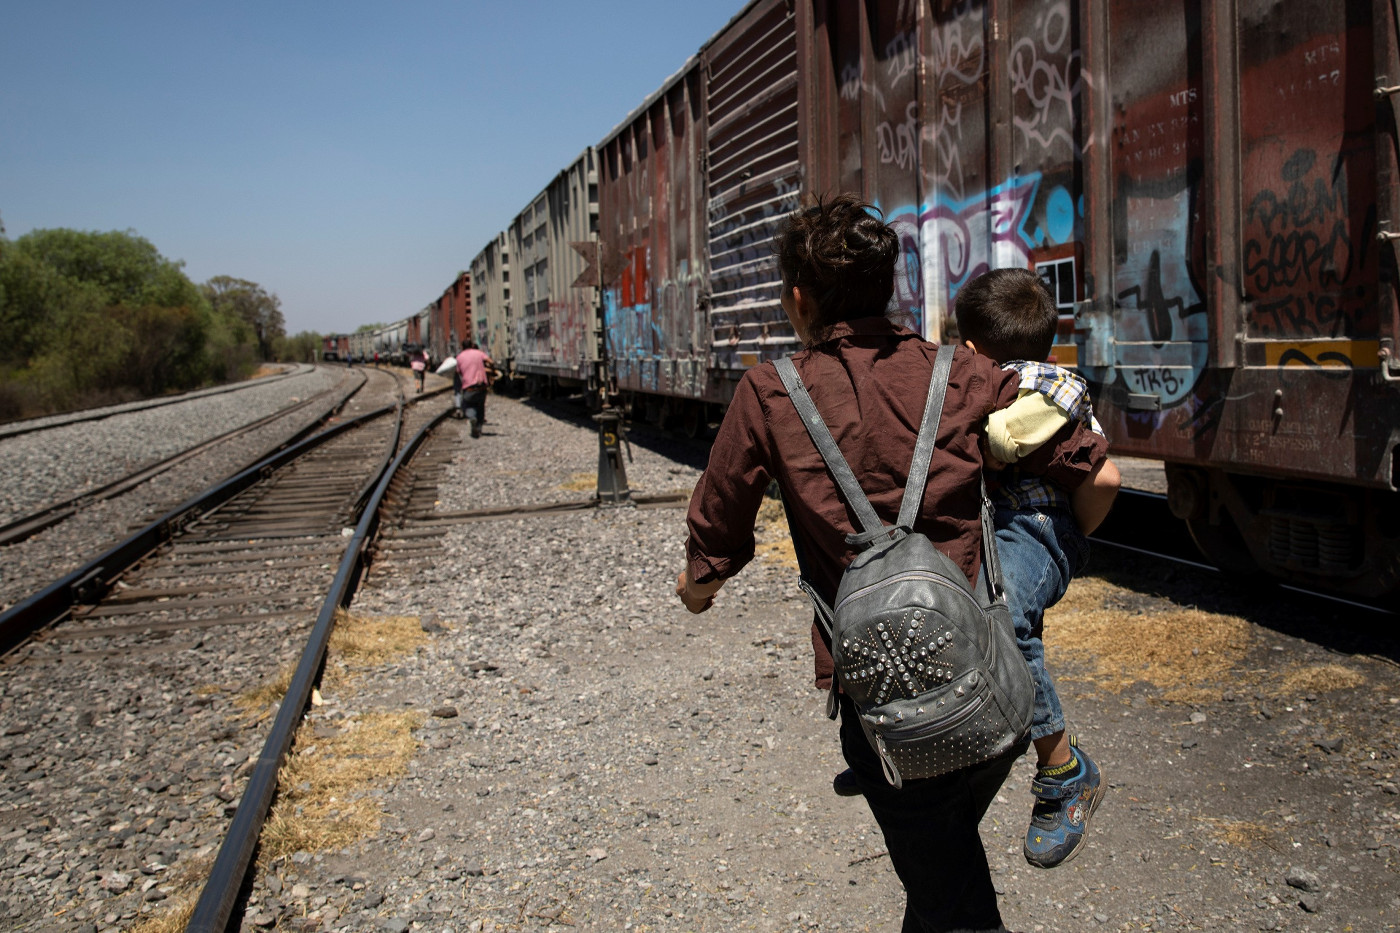 Viele Migranten aus Mittelamerika reisen als blinde Passagiere auf dem Güterzug, genannt "La Bestia", der Mexiko von Süden nach Norden Richtung US-amerikanische Grenze durchquert. Foto: Adveniat/Hans-Máximo Musielik